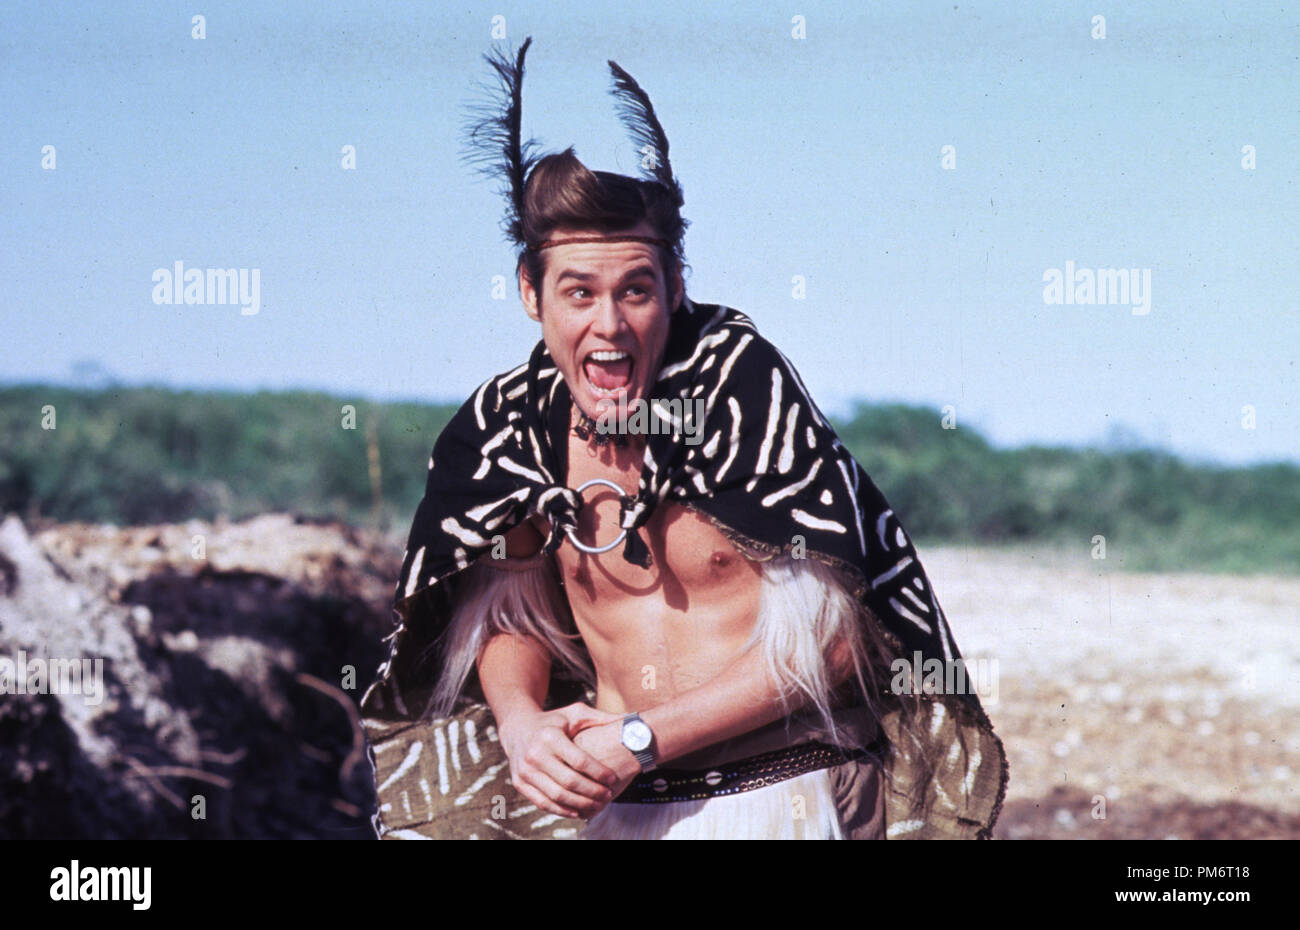 Szenenfoto aus "Ace Ventura: Wenn die Natur ruft", Jim Carrey © 1995 Warner Brothers Photo Credit: Marsha Blackburn Datei Referenz # 31043690 THA nur für redaktionelle Verwendung - Alle Rechte vorbehalten Stockfoto